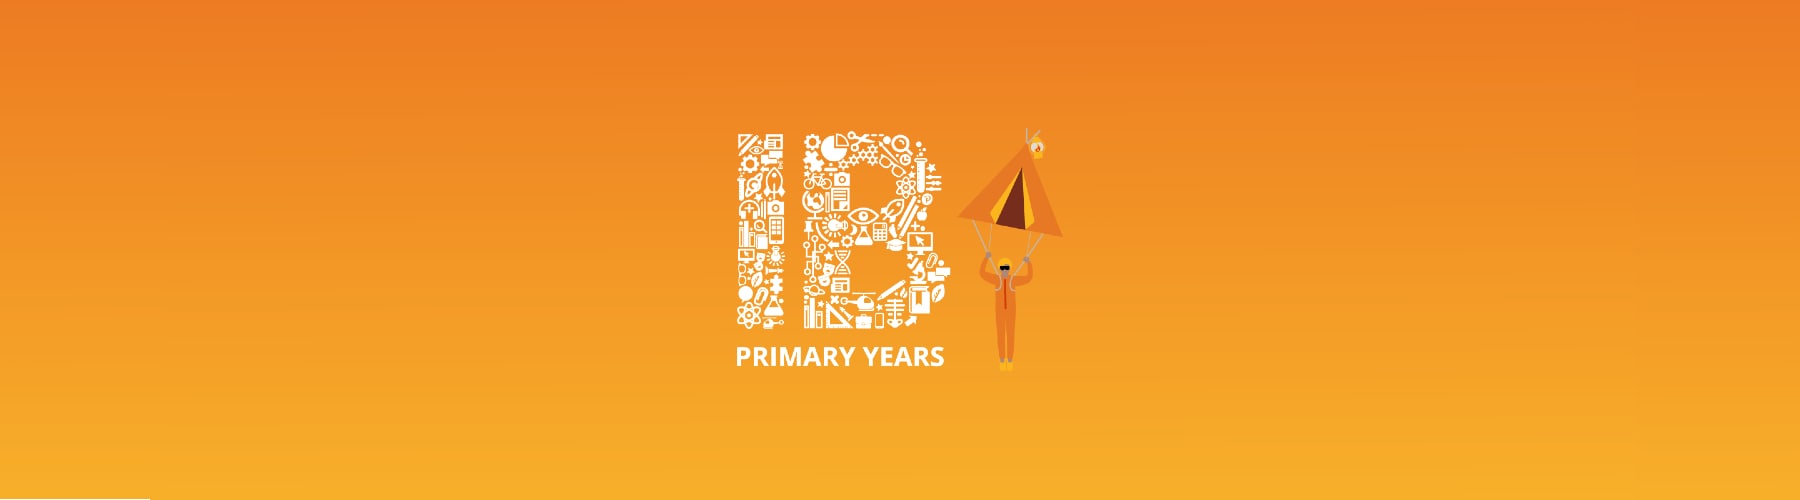 IB Primary Years hero banner